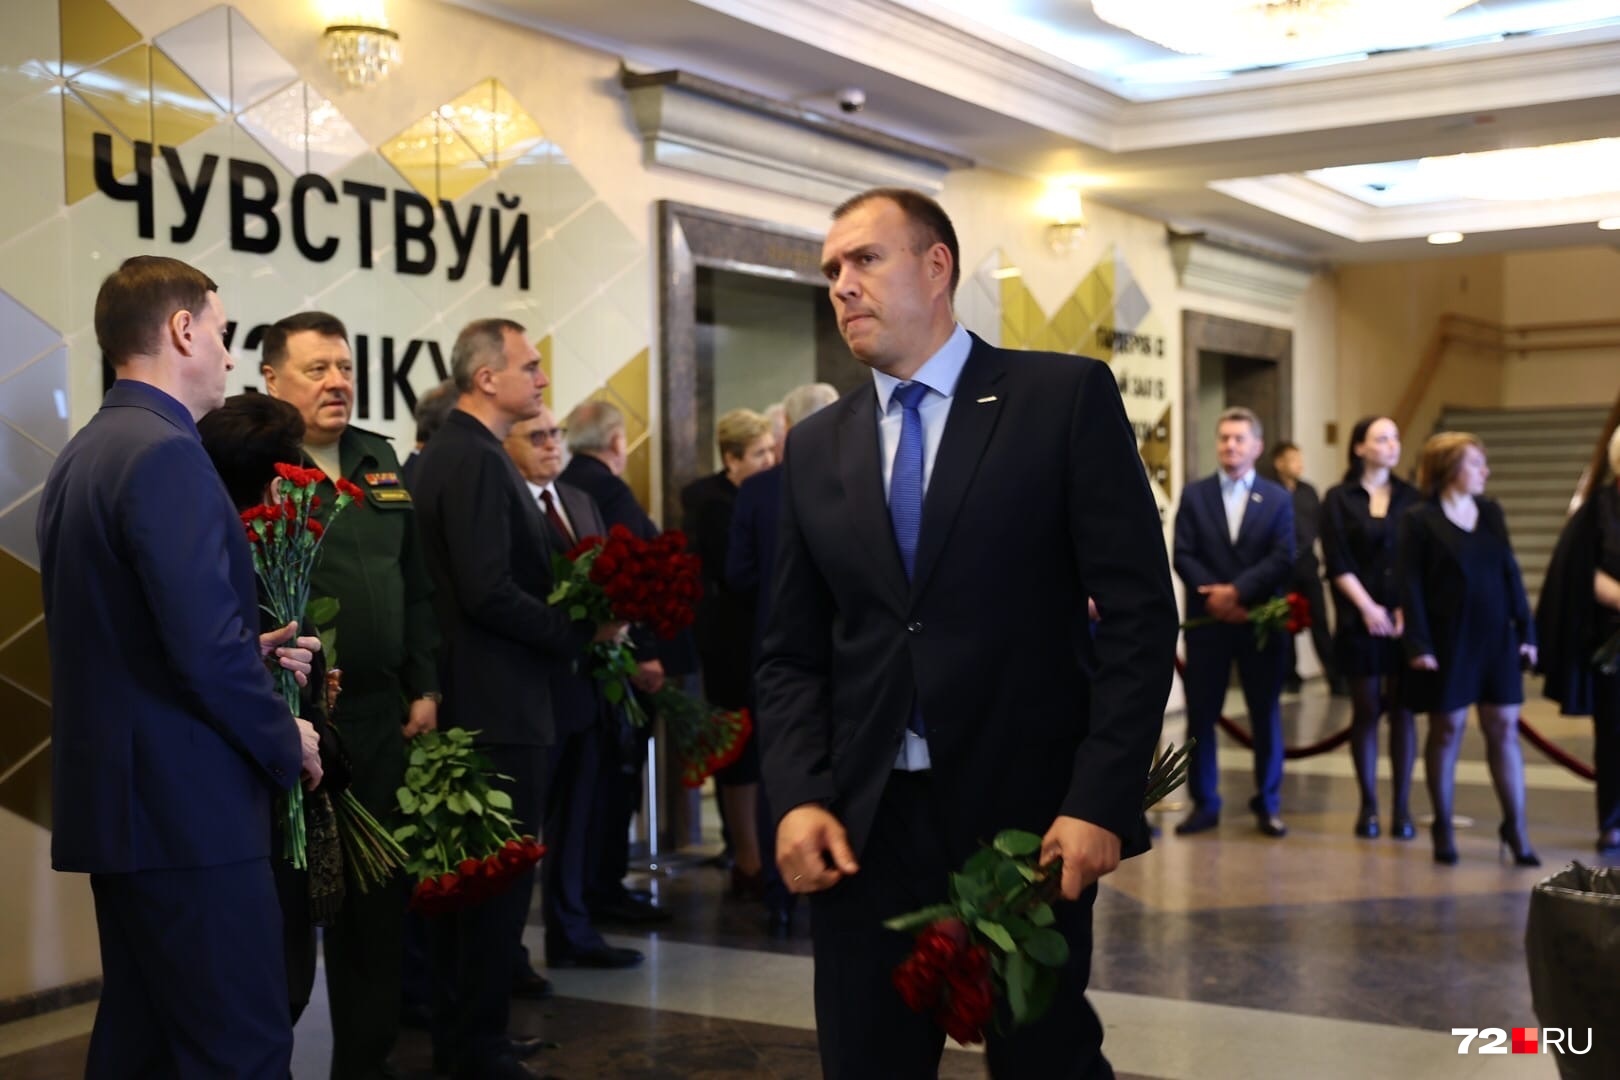 Заместитель главы города Петр Вагин принес букет красных роз